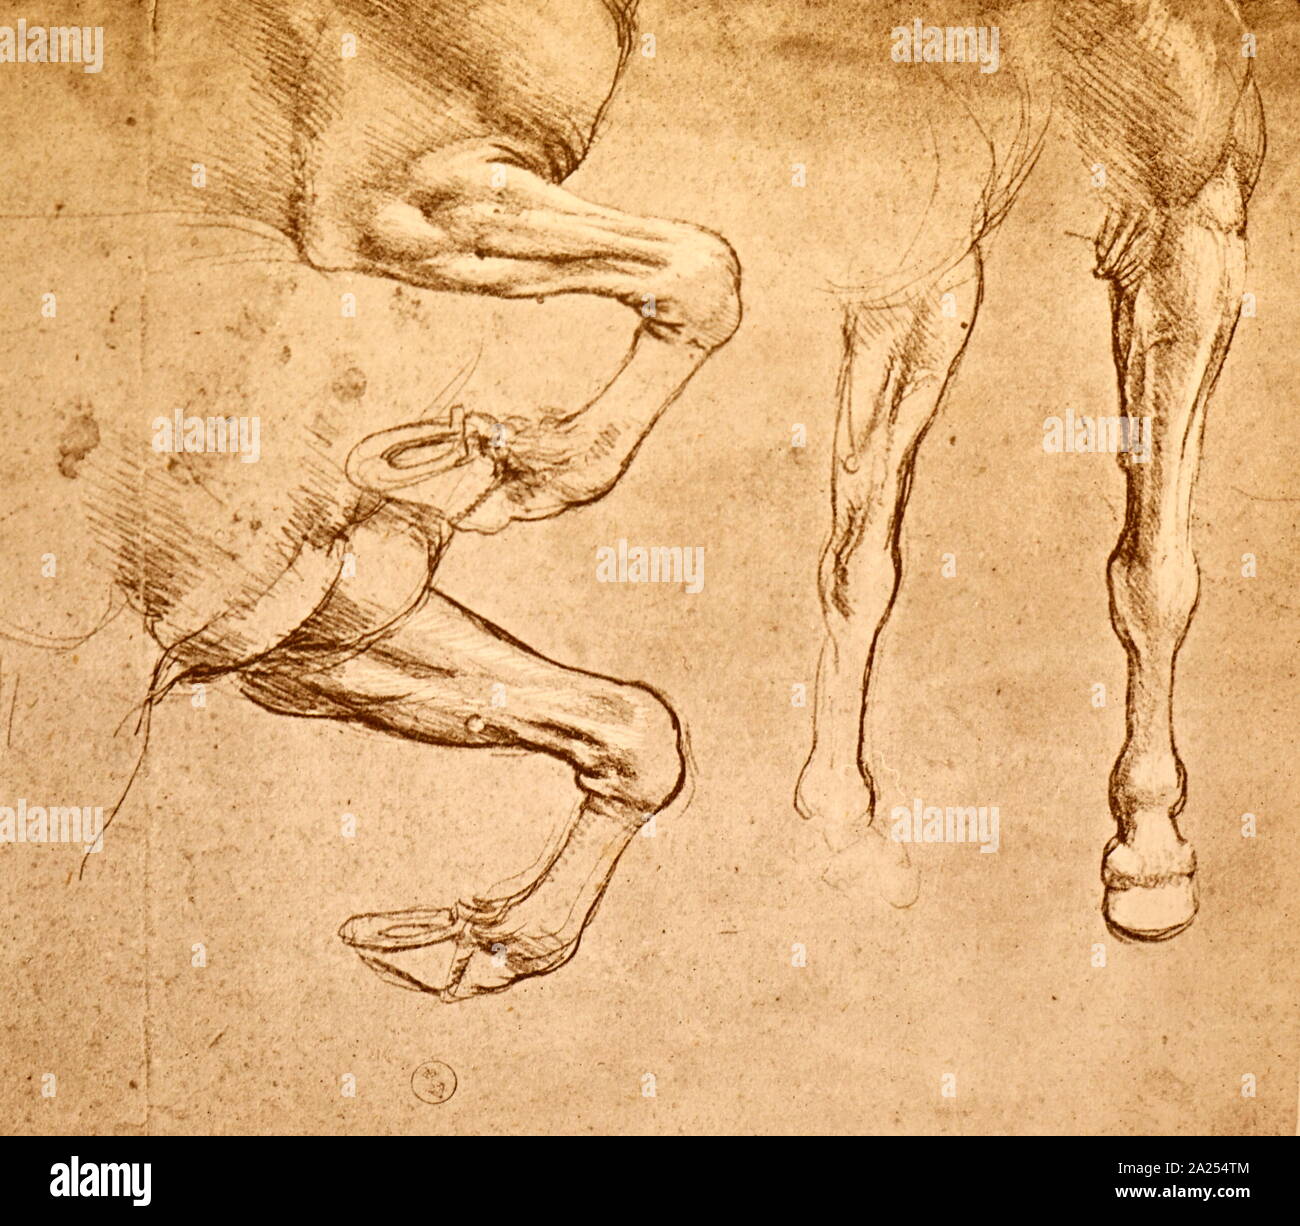 Quatre études de chevaux jambes ; c1500. À partir de la collection du Musée des beaux-arts, Budapest. Par Leonardo da Vinci (1452 - 1519), un grand penseur de la Renaissance italienne. Da Vinci était expert dans l'invention, la peinture, l'architecture, des sciences et de l'ingénierie. Banque D'Images